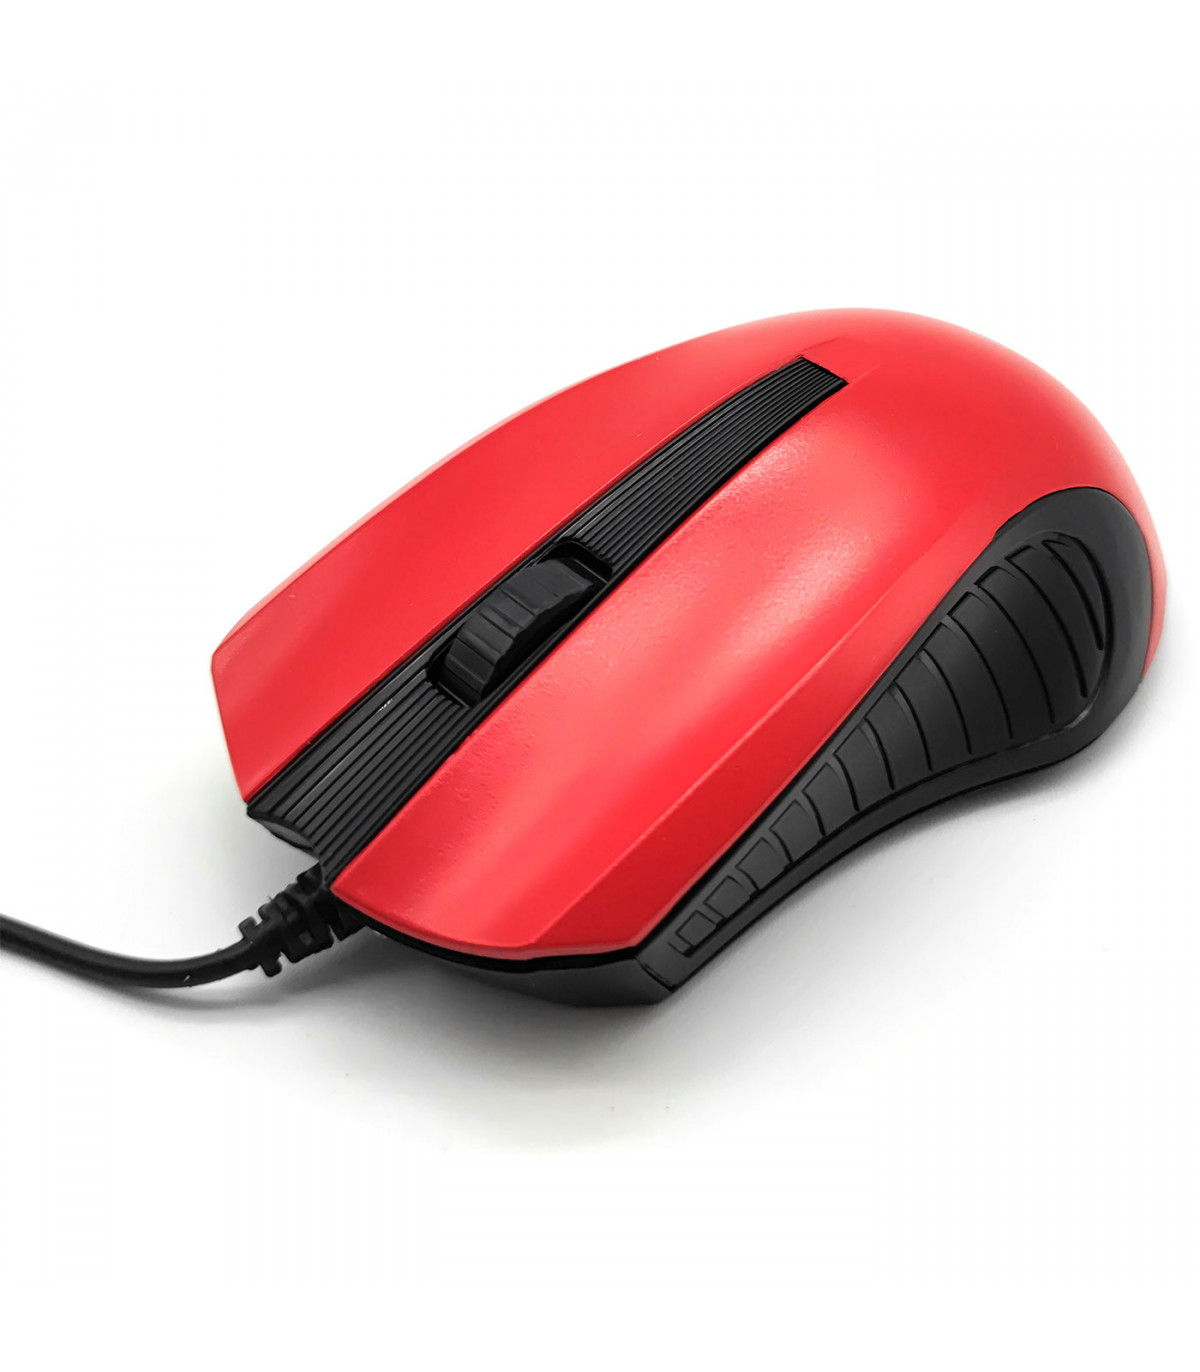 Ratón para PC portátil escritorio cable óptico USB 2.0 Mouse for Laptop  Desktop